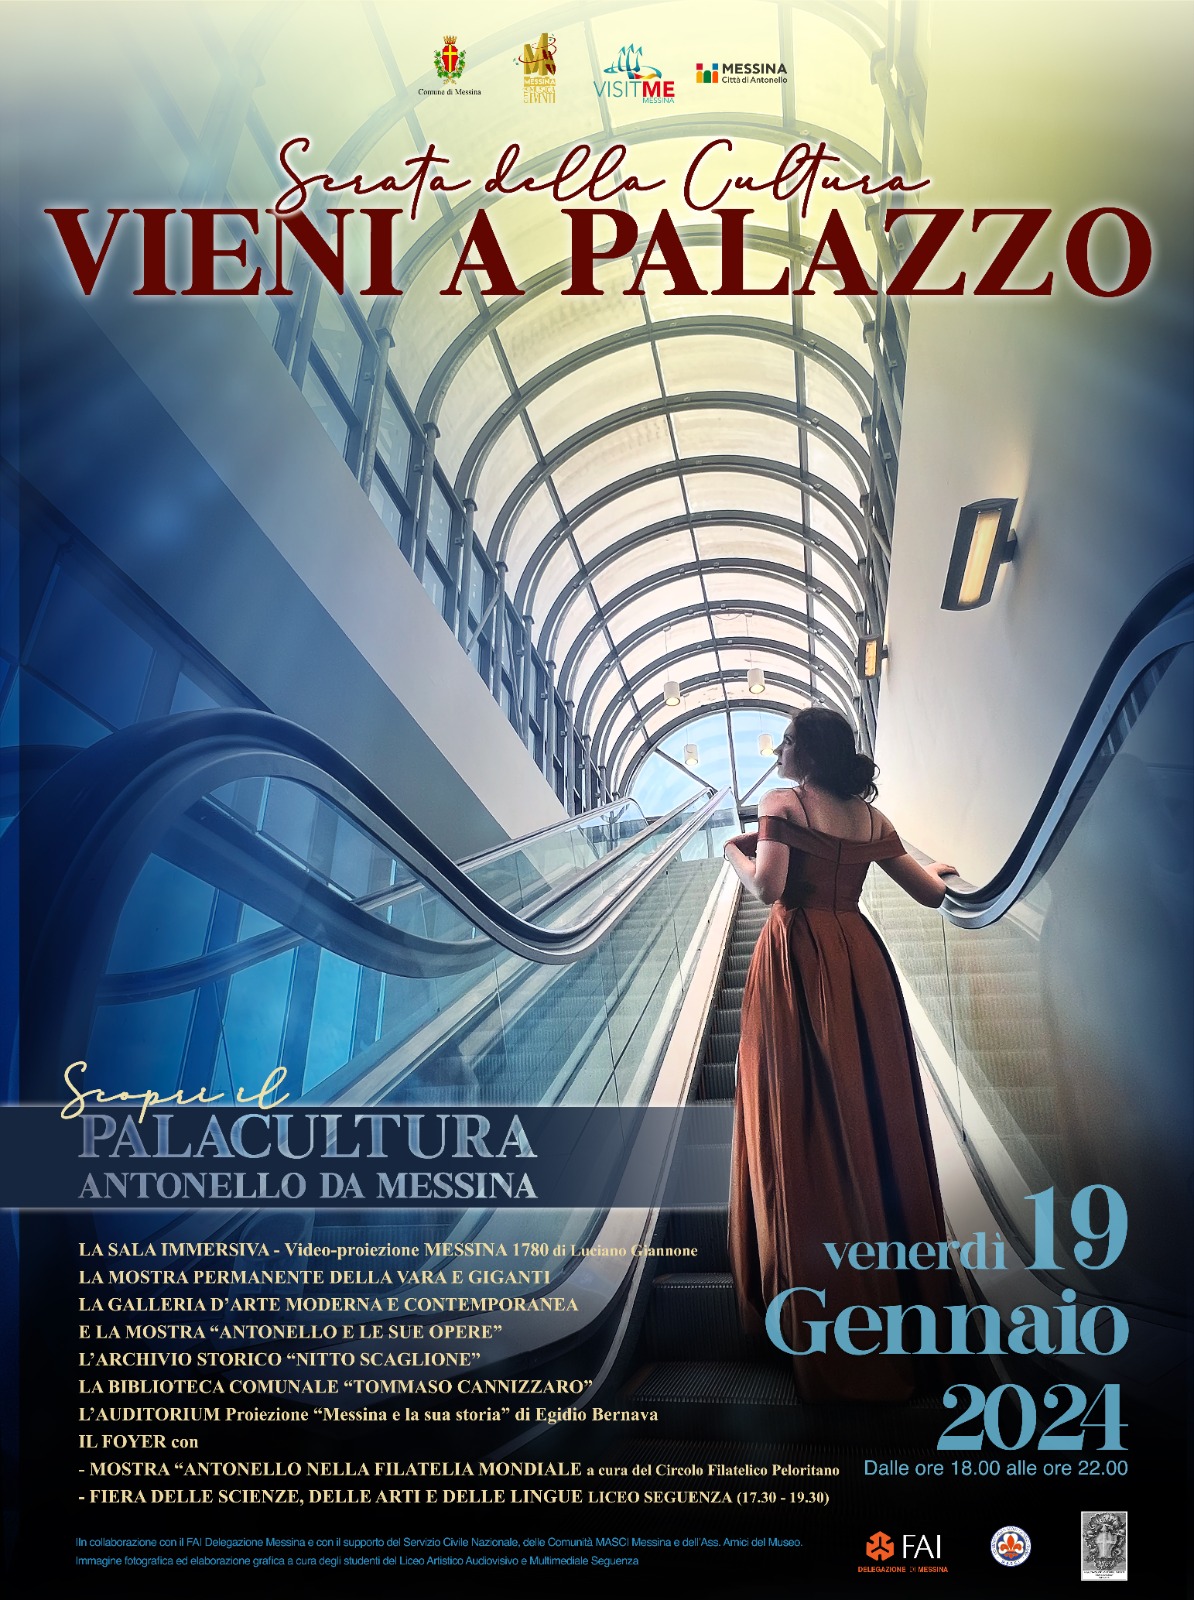 Serata della Cultura "VIENI A PALAZZO": domani conferenza stampa di presentazione a palazzo Zanca